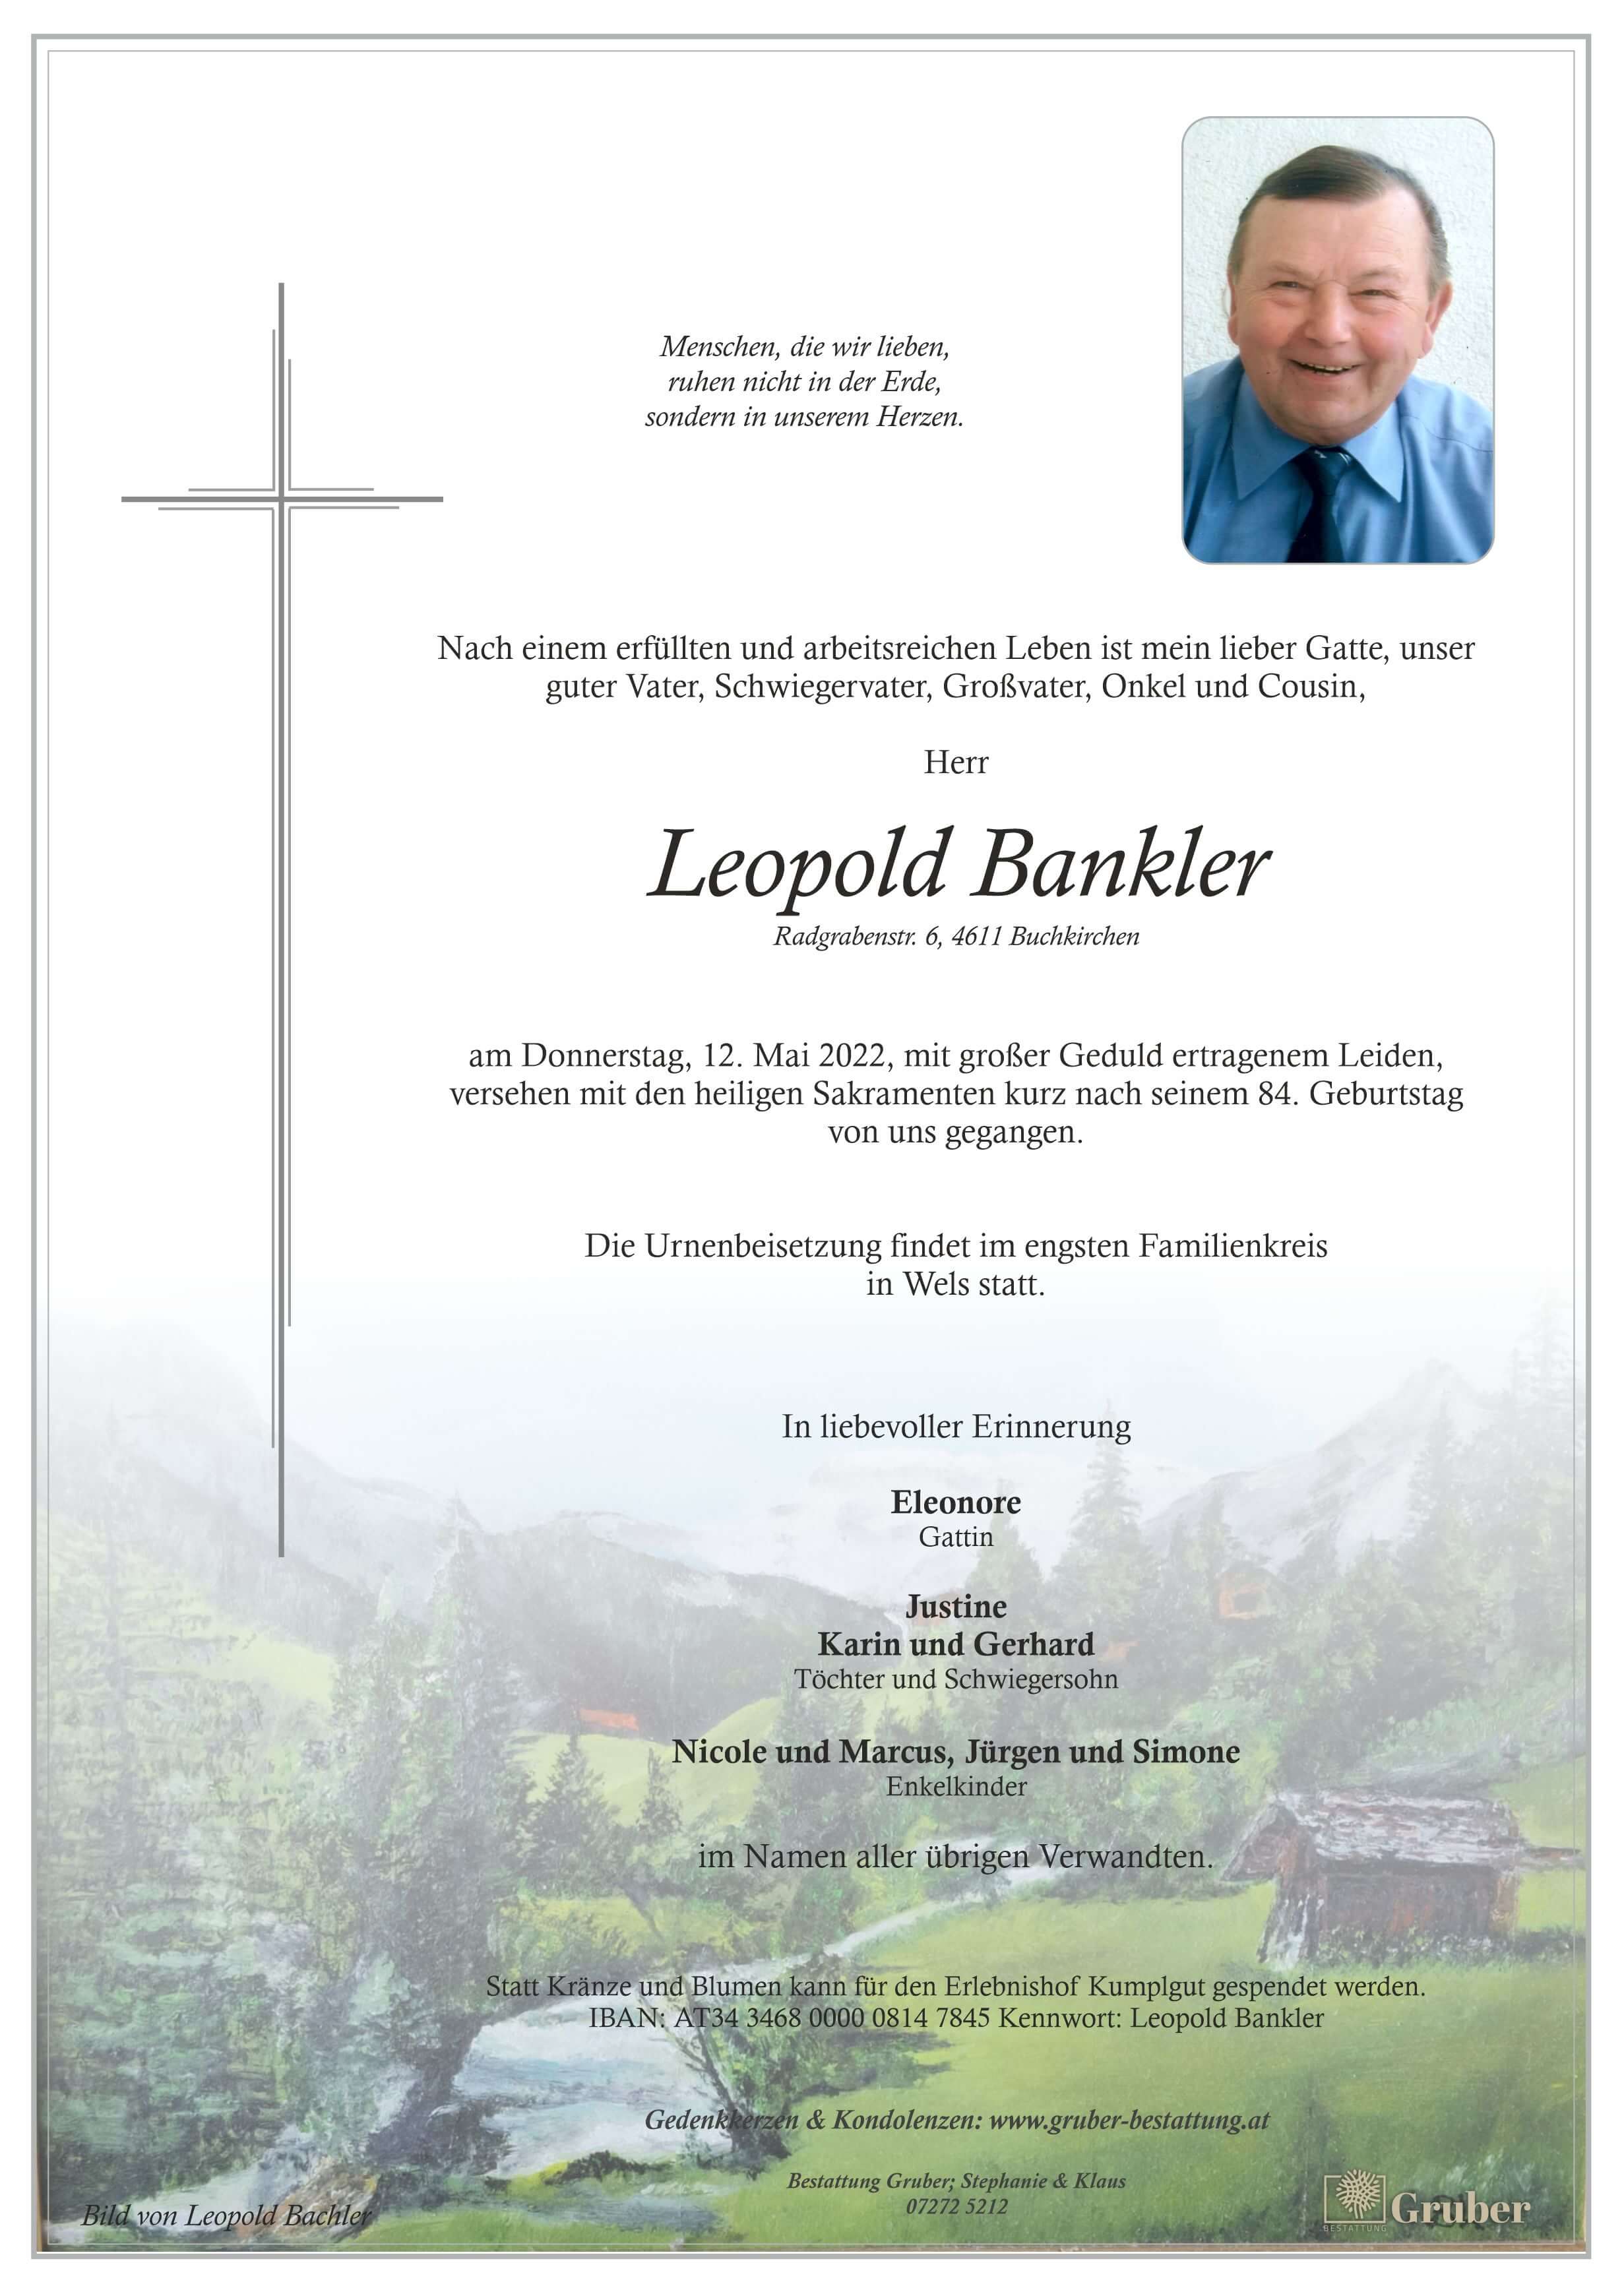 Leopold Bankler (Buchkirchen)